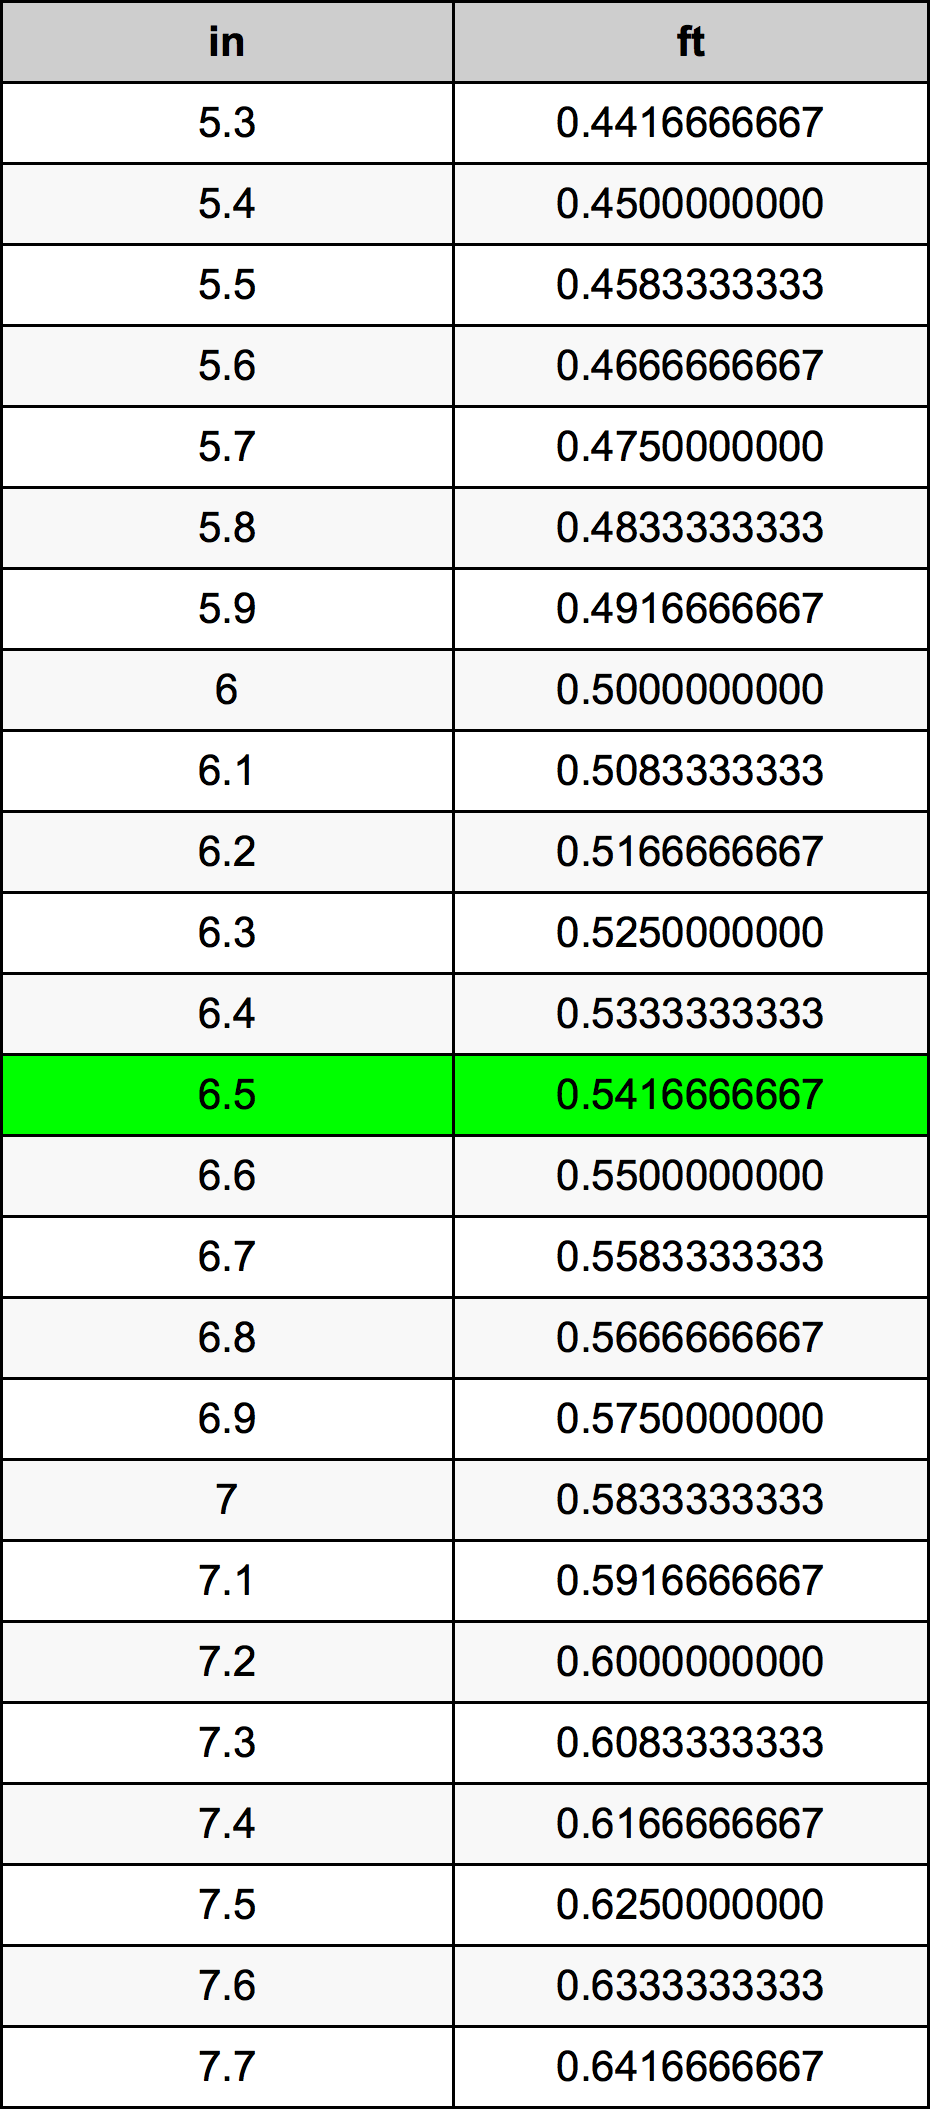 6.5 Pulzier konverżjoni tabella